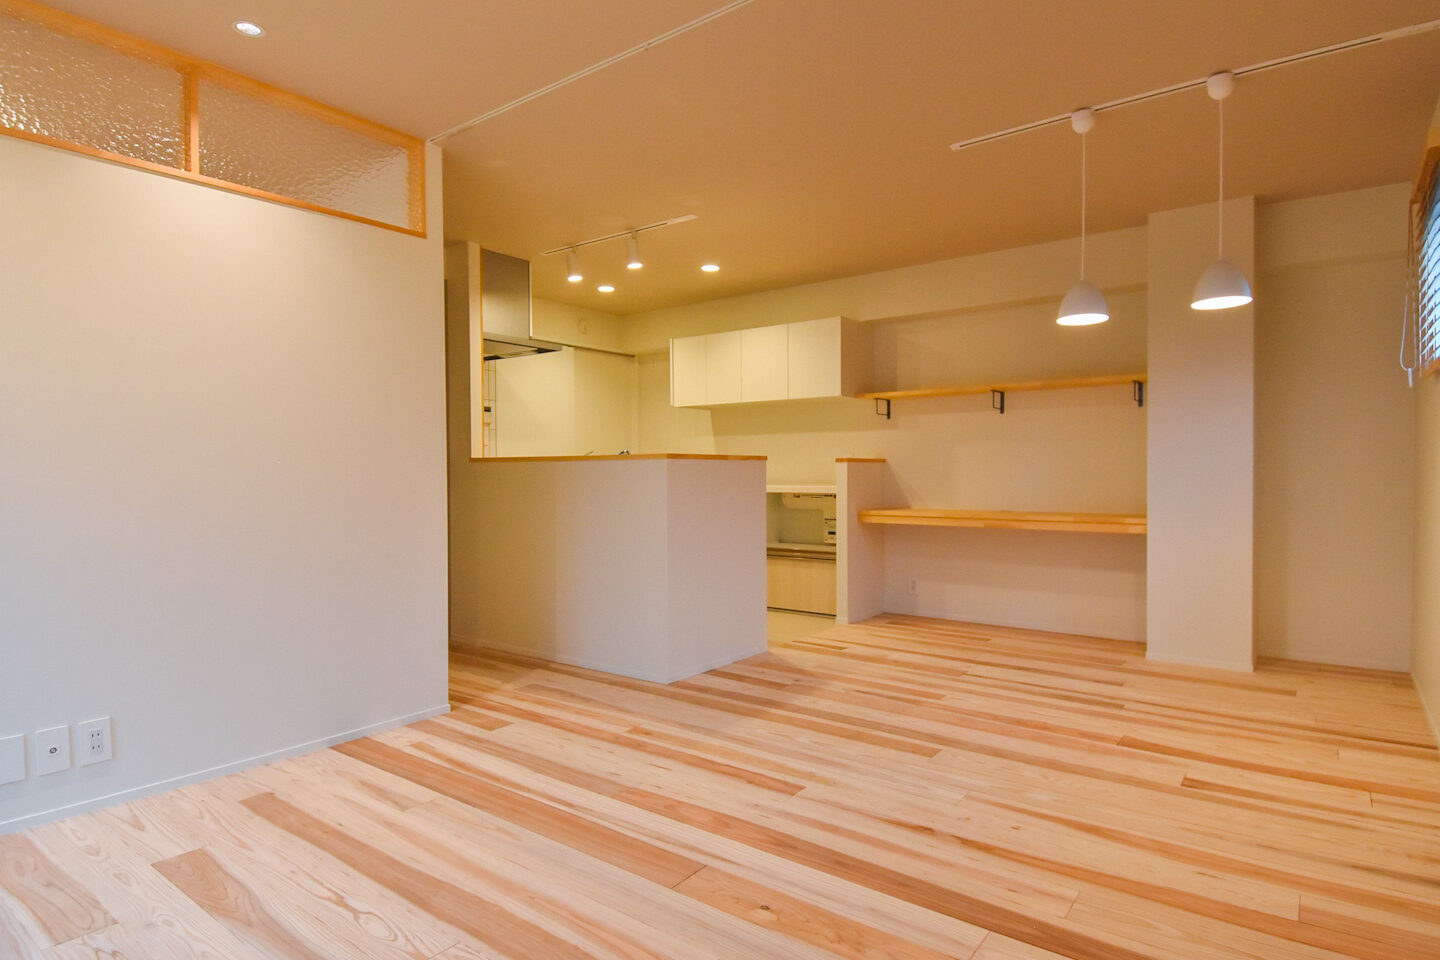 キッチンとリビングルームが一体となったオープンプランの空間。木製の床と棚がナチュラルな雰囲気を引き立てています。